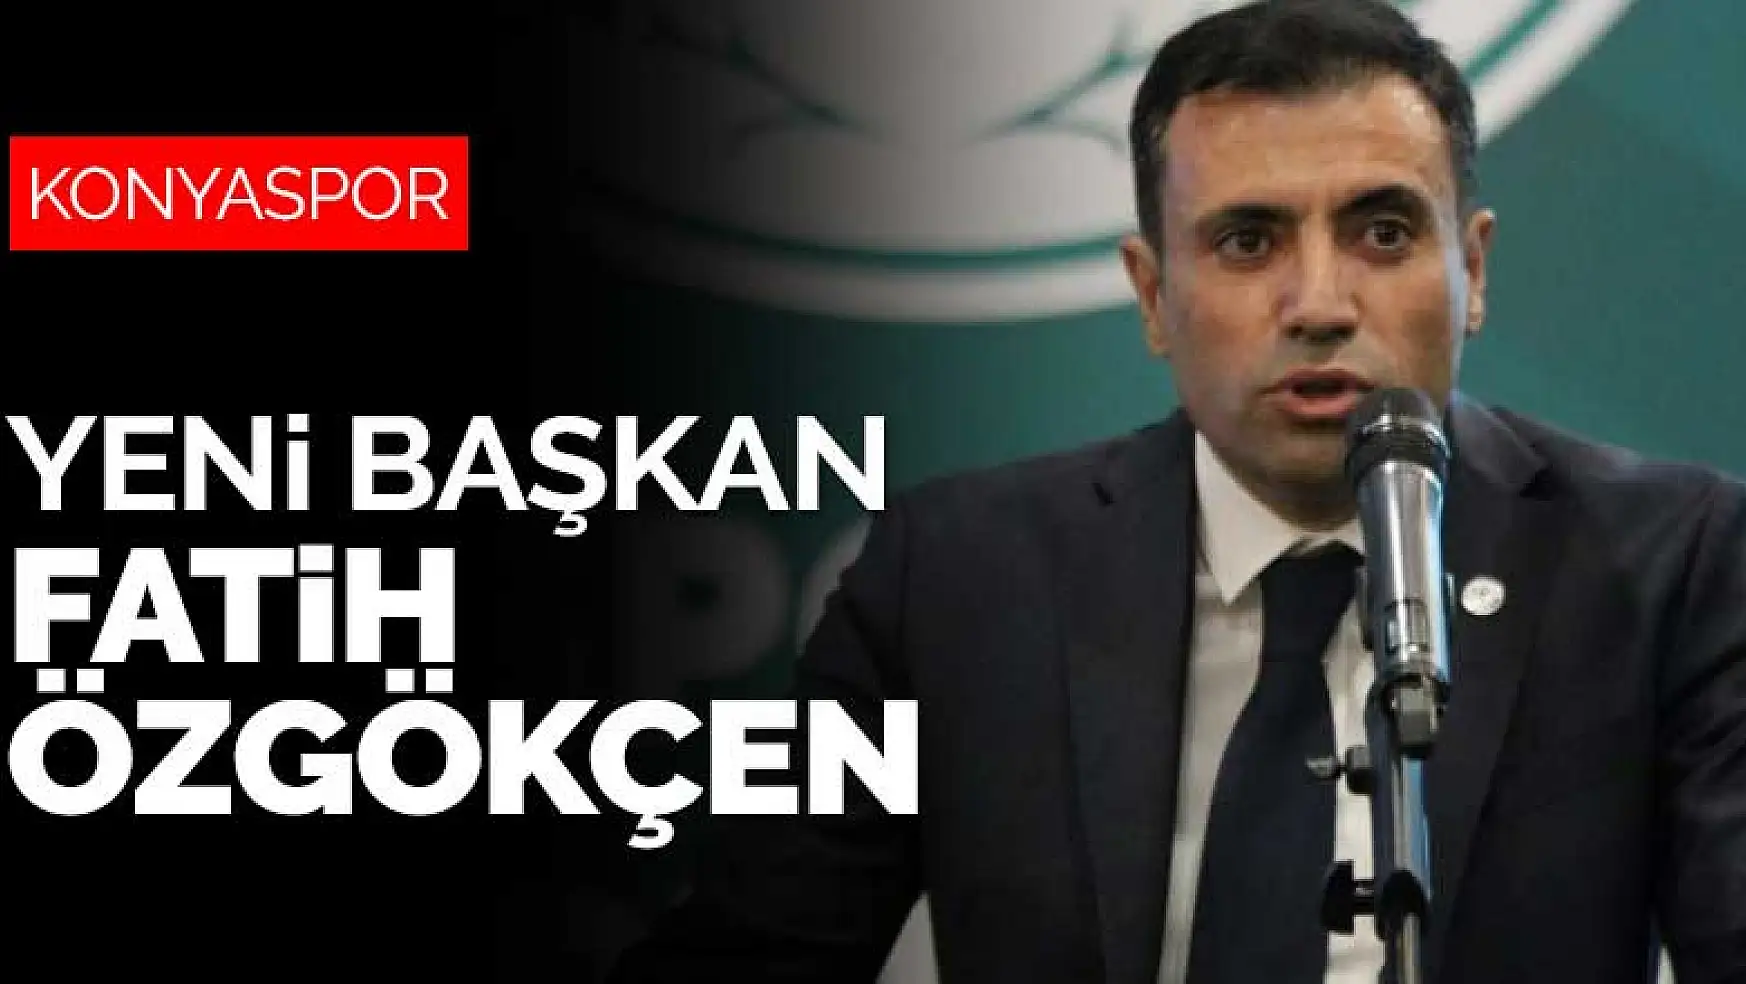 Konyaspor'un yeni başkanı Fatih Özgökçen hakkında bilinmeyenler